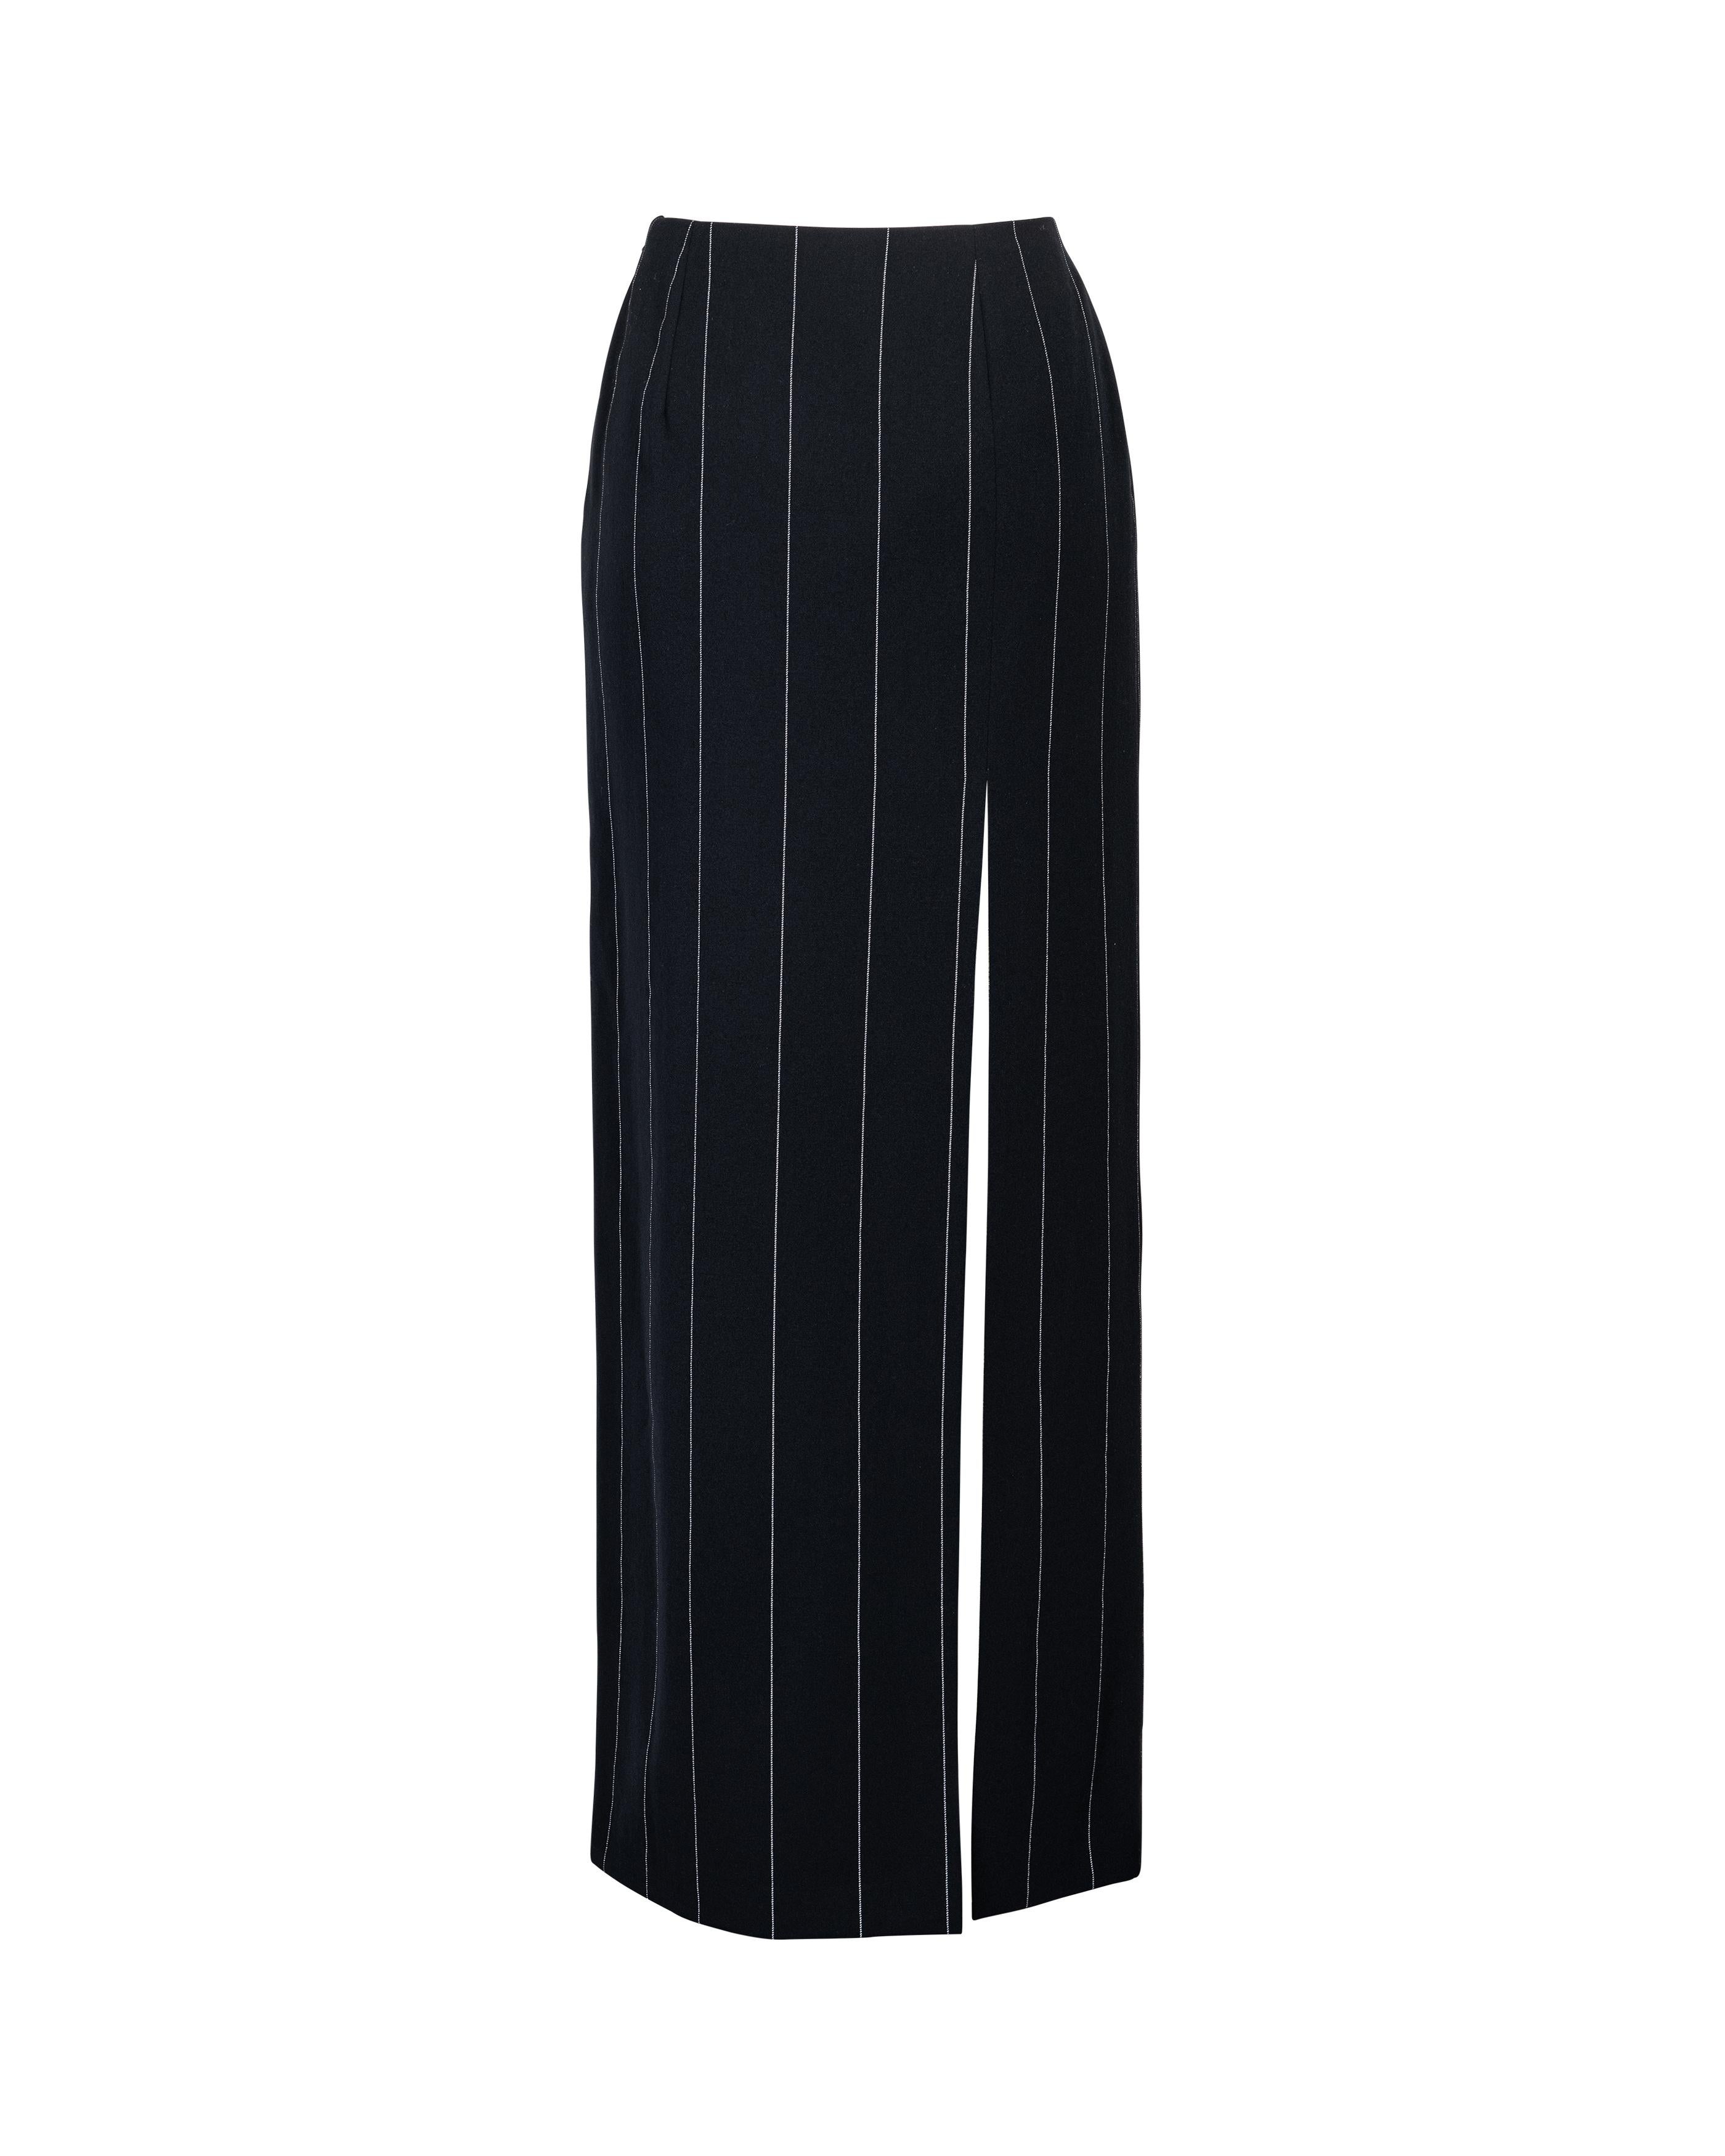 Women's A/W 1998 Gianni Versace Deep Navy Pinstripe Skirt